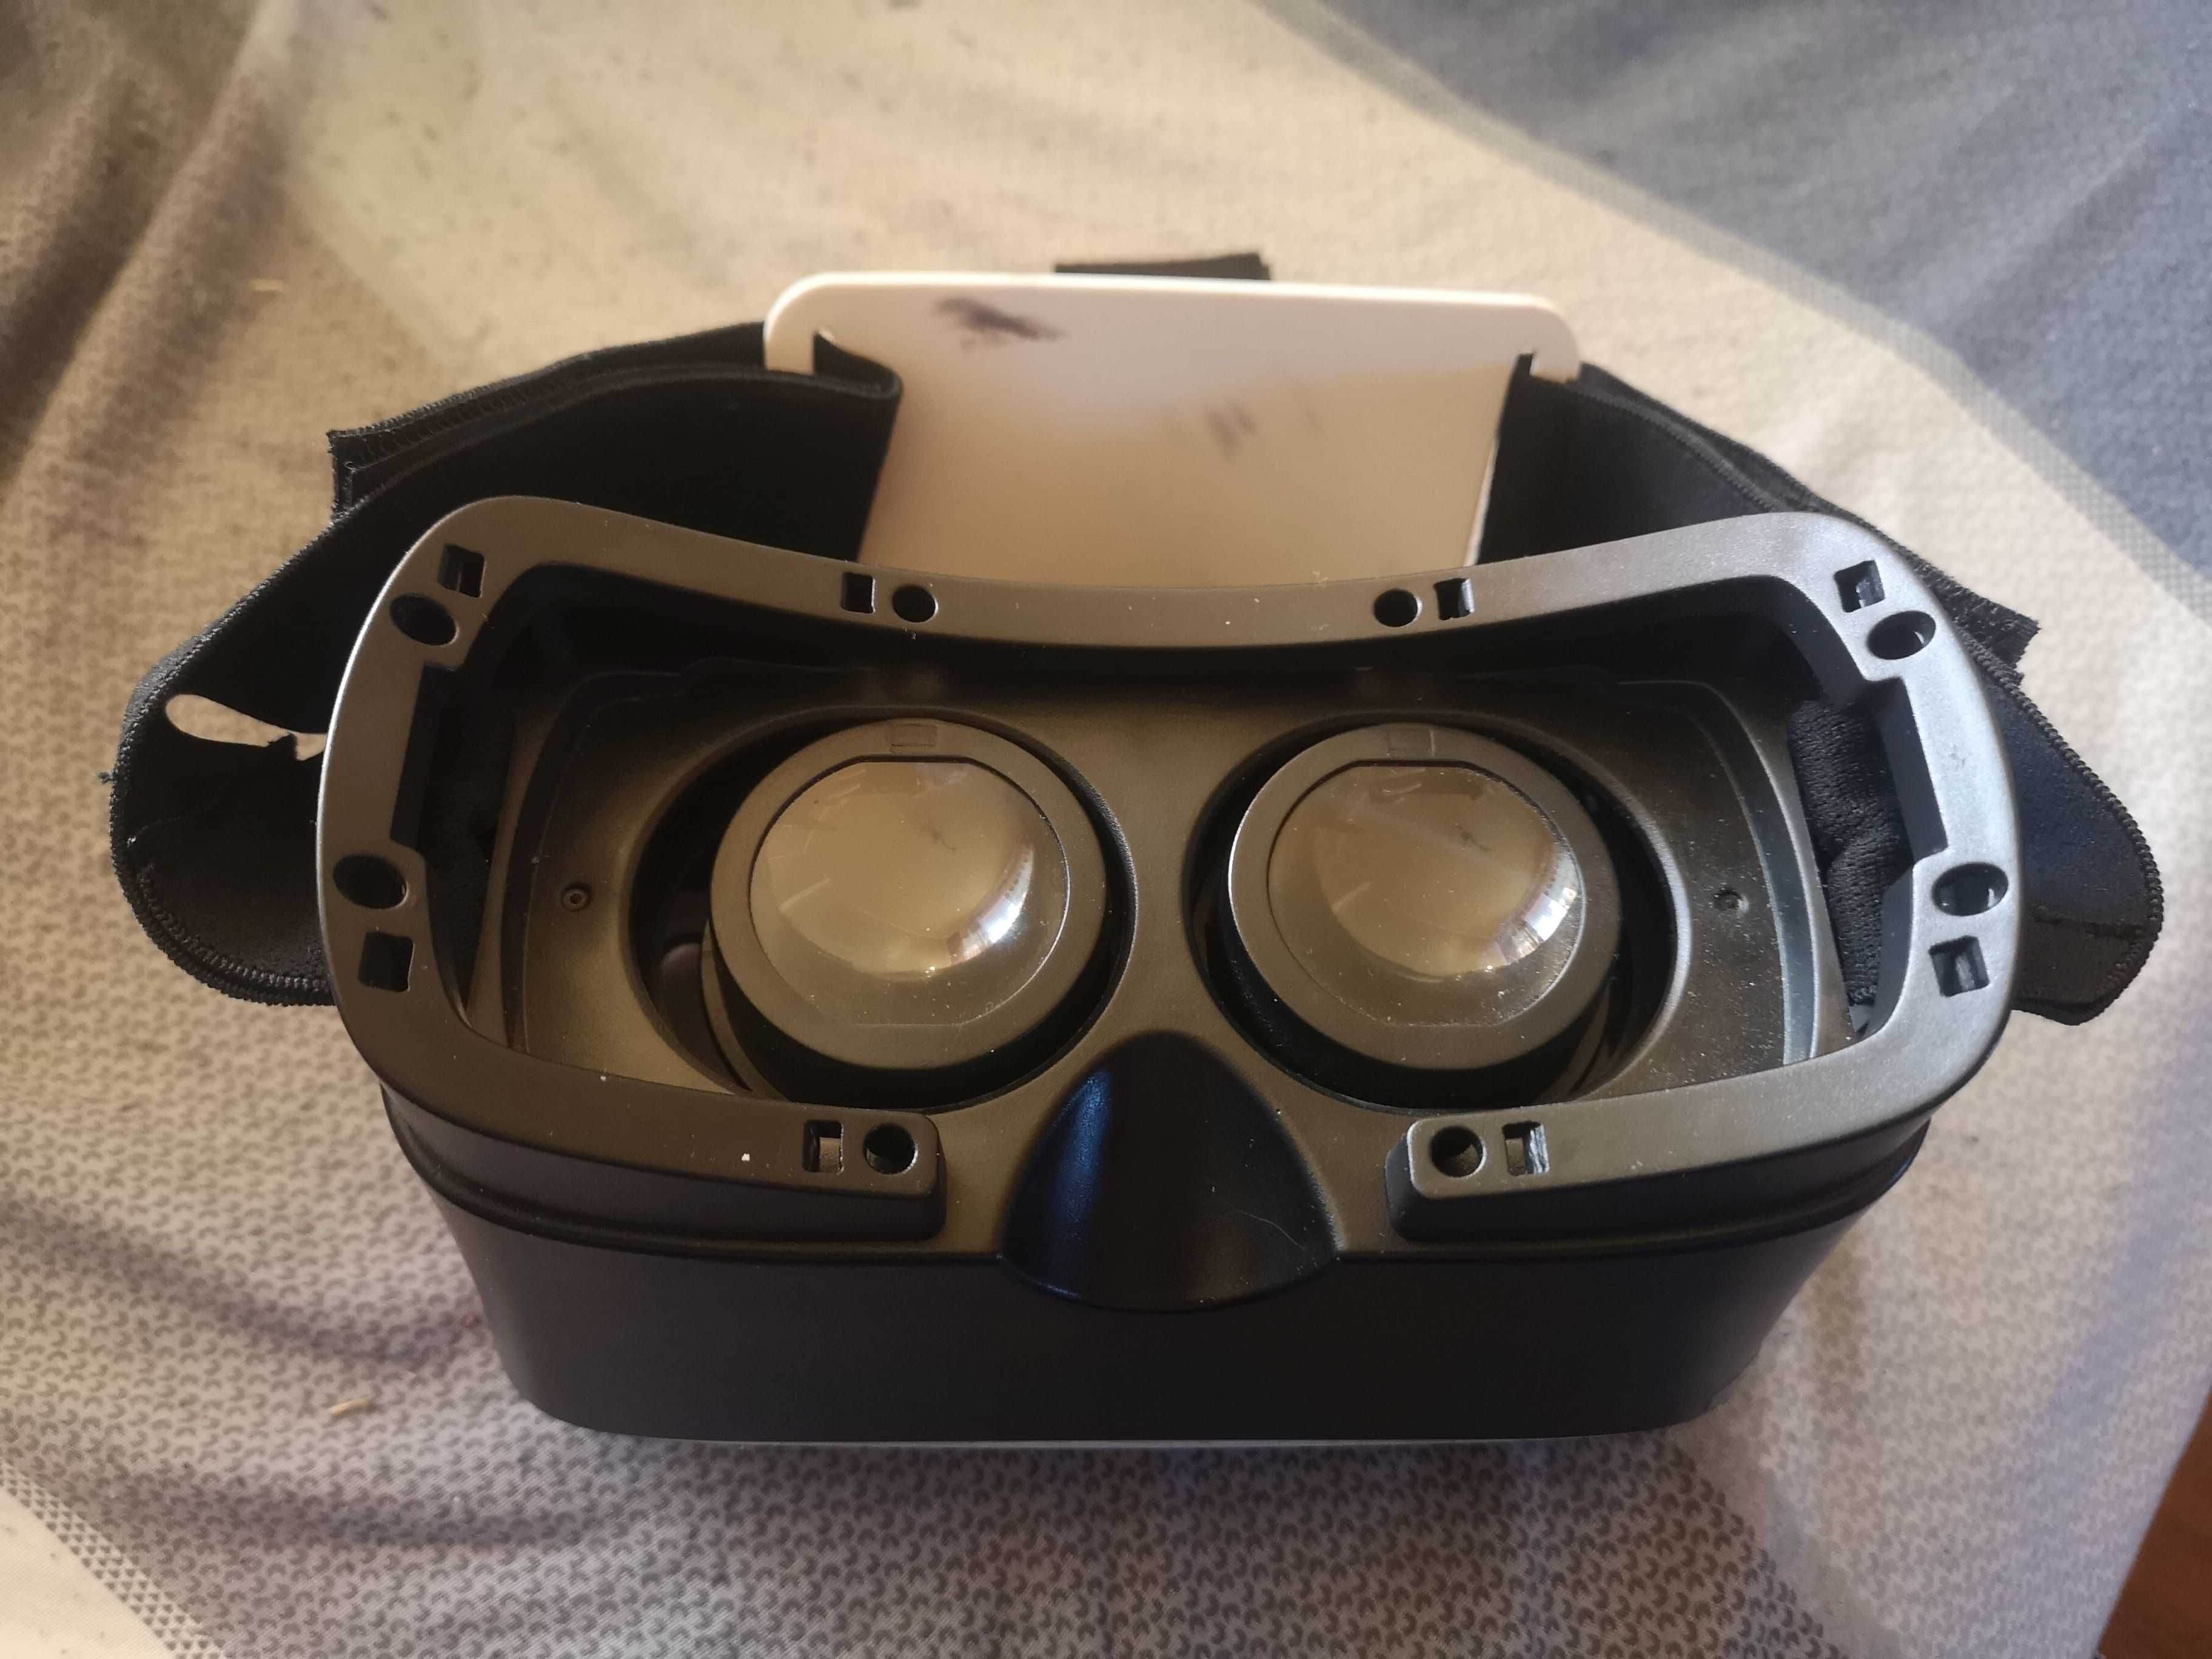 HYKKER VR Glasses 3D Mało Używane